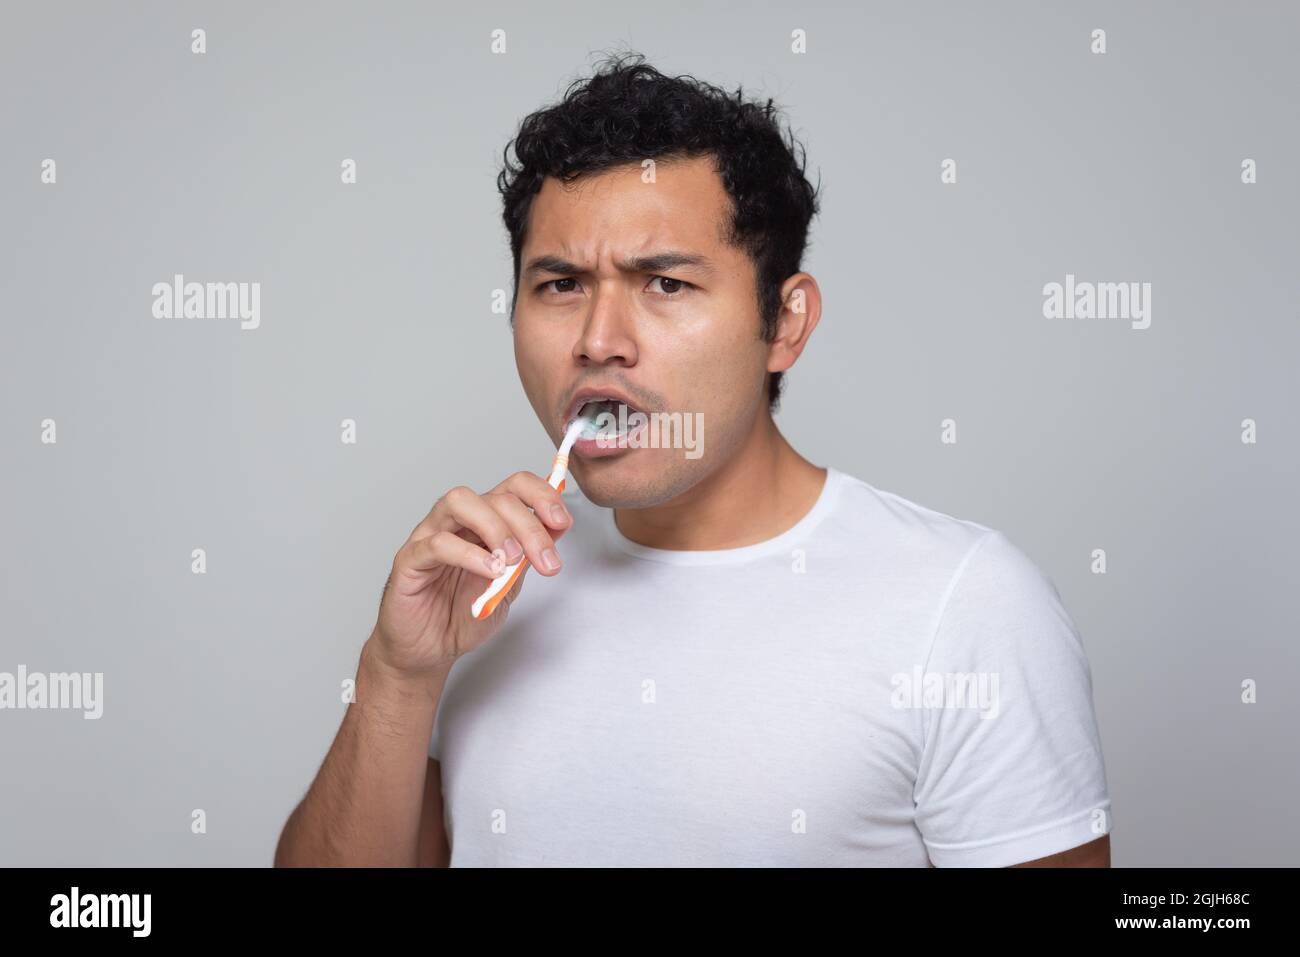 Un hombre mexicano con aspecto latino hispano se cepilla los dientes con un cepillo de dientes naranja, un hombre joven con pelo chino en camisa blanca con fondo gris Foto de stock